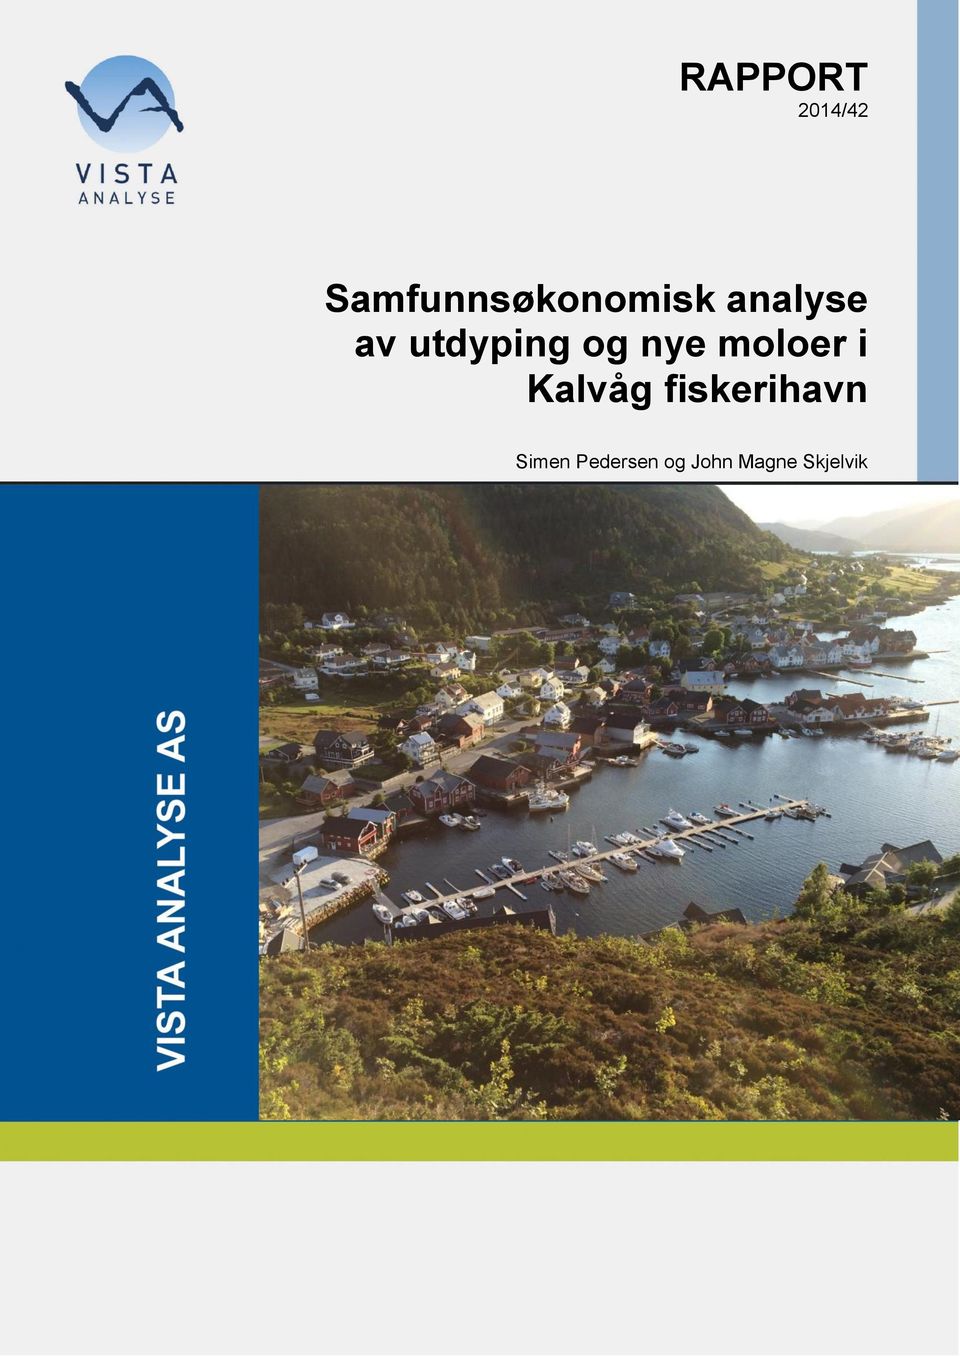 utdyping og nye moloer i Kalvåg